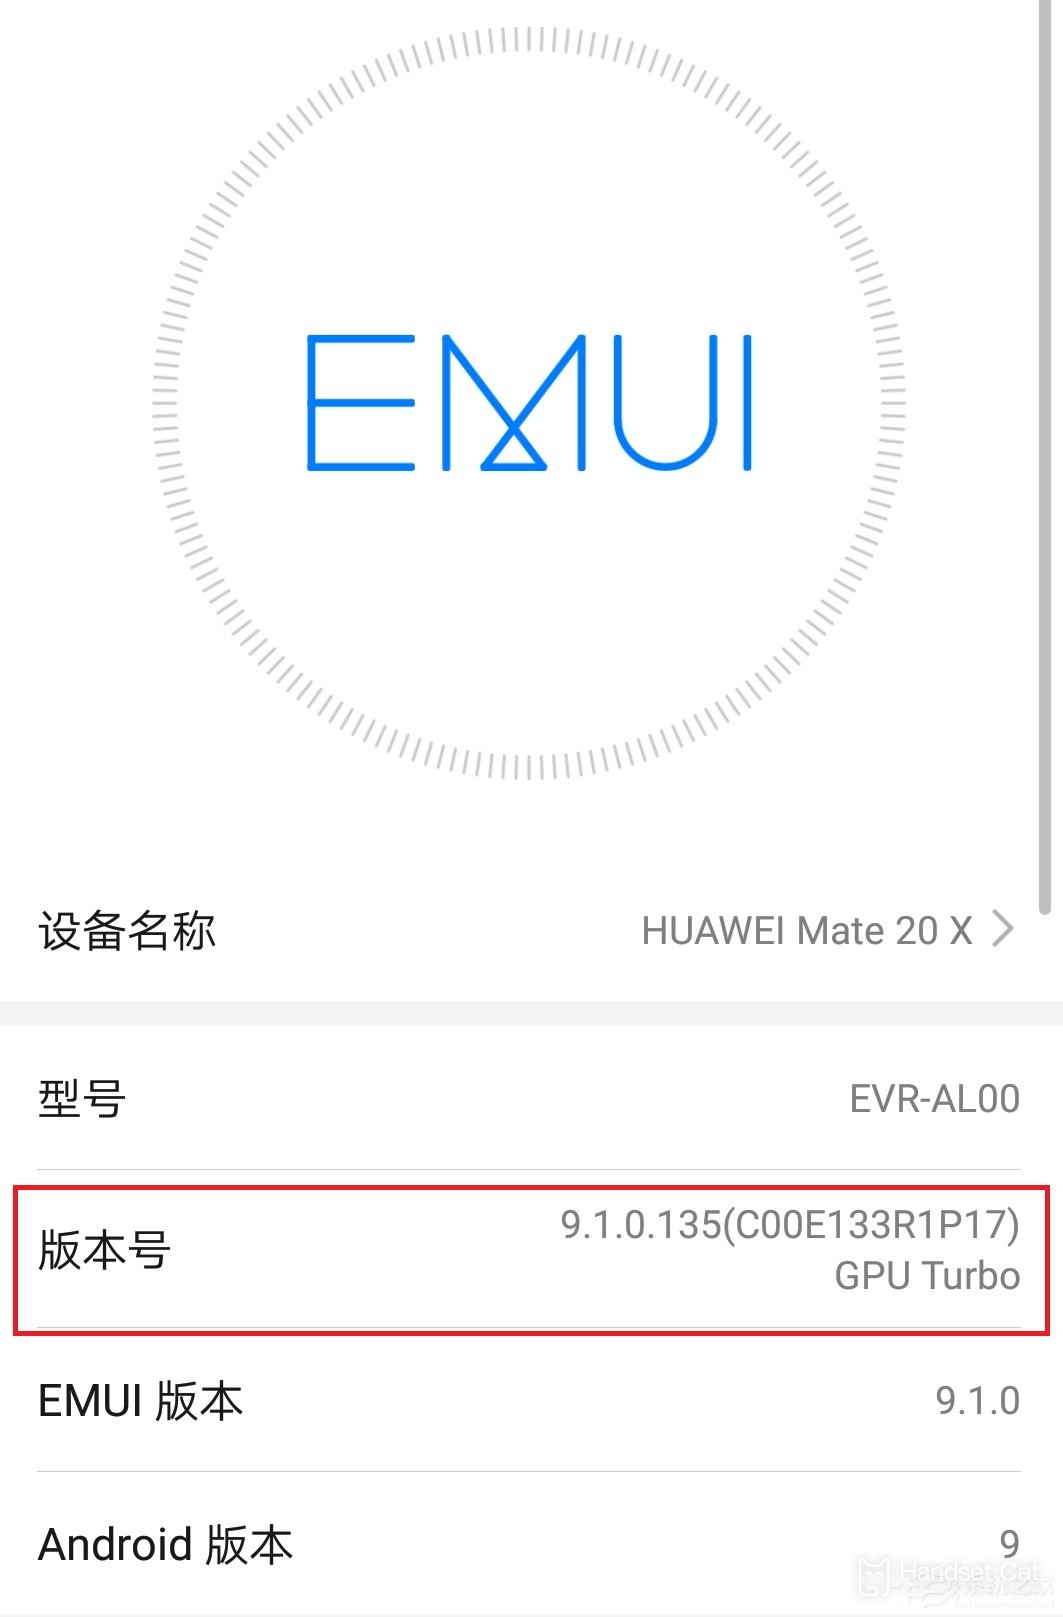 บทช่วยสอนเกี่ยวกับการเข้าสู่โหมดนักพัฒนาซอฟต์แวร์บน Huawei Enjoy 50 Pro